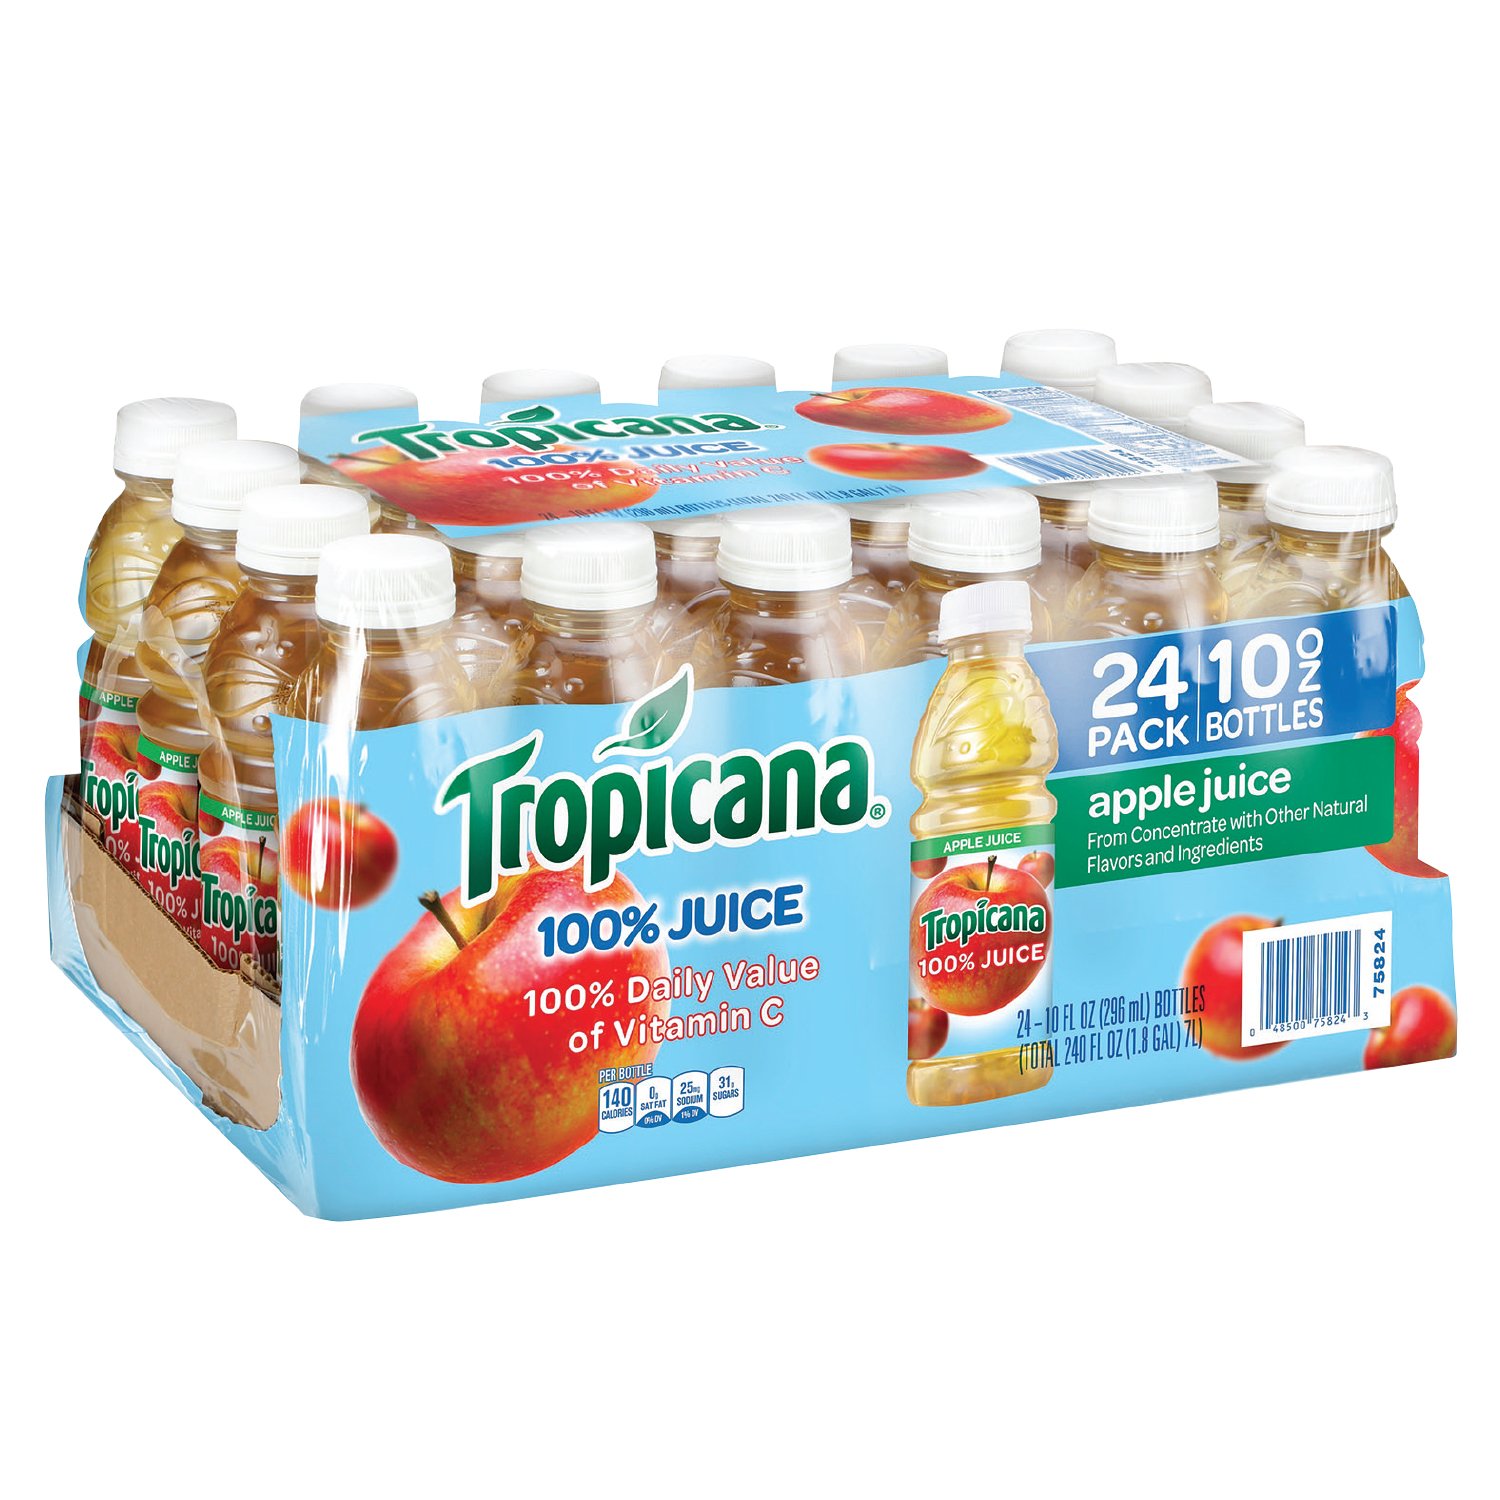 Amazon Lowest Price: Tropicana Apple Juice, 10 oz., 24 Count.